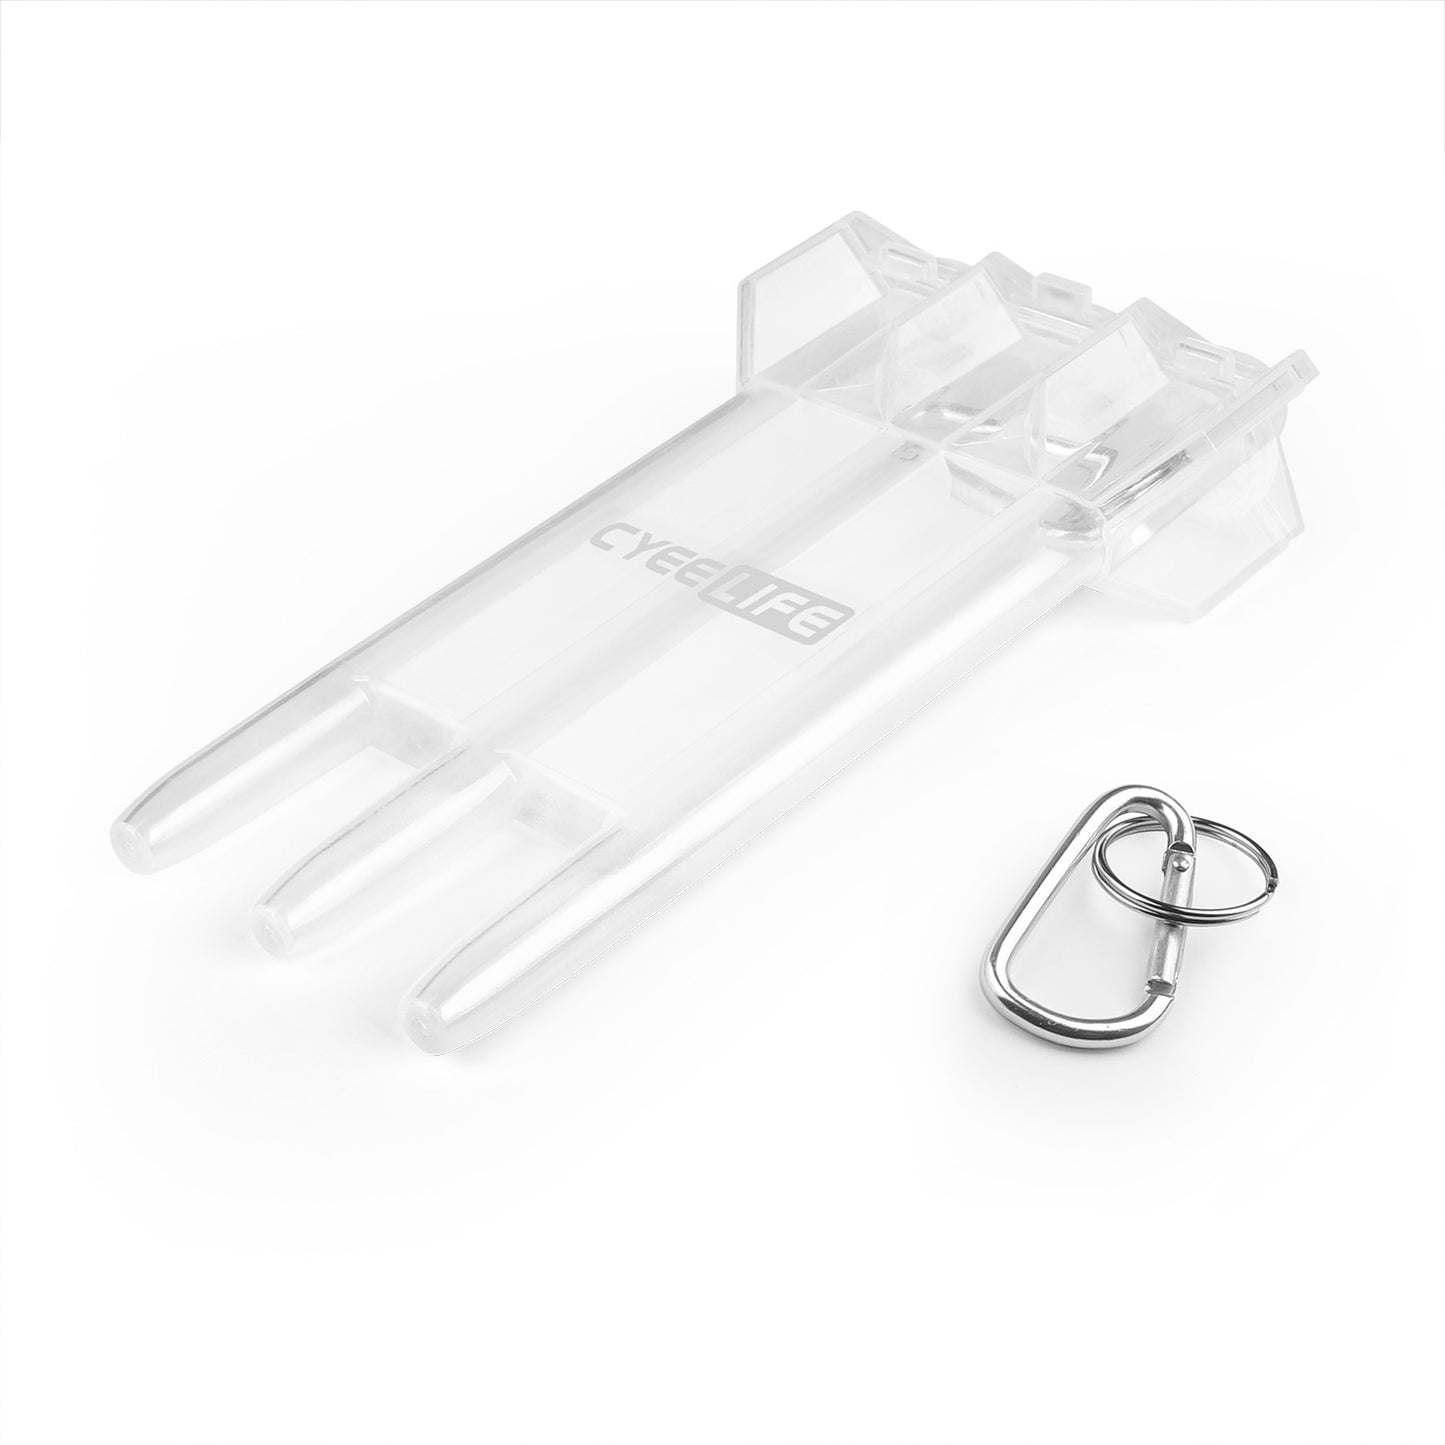 ZX01A Darts case Transparent Plastic 1pcs-11 Colours Optional-Carrying case